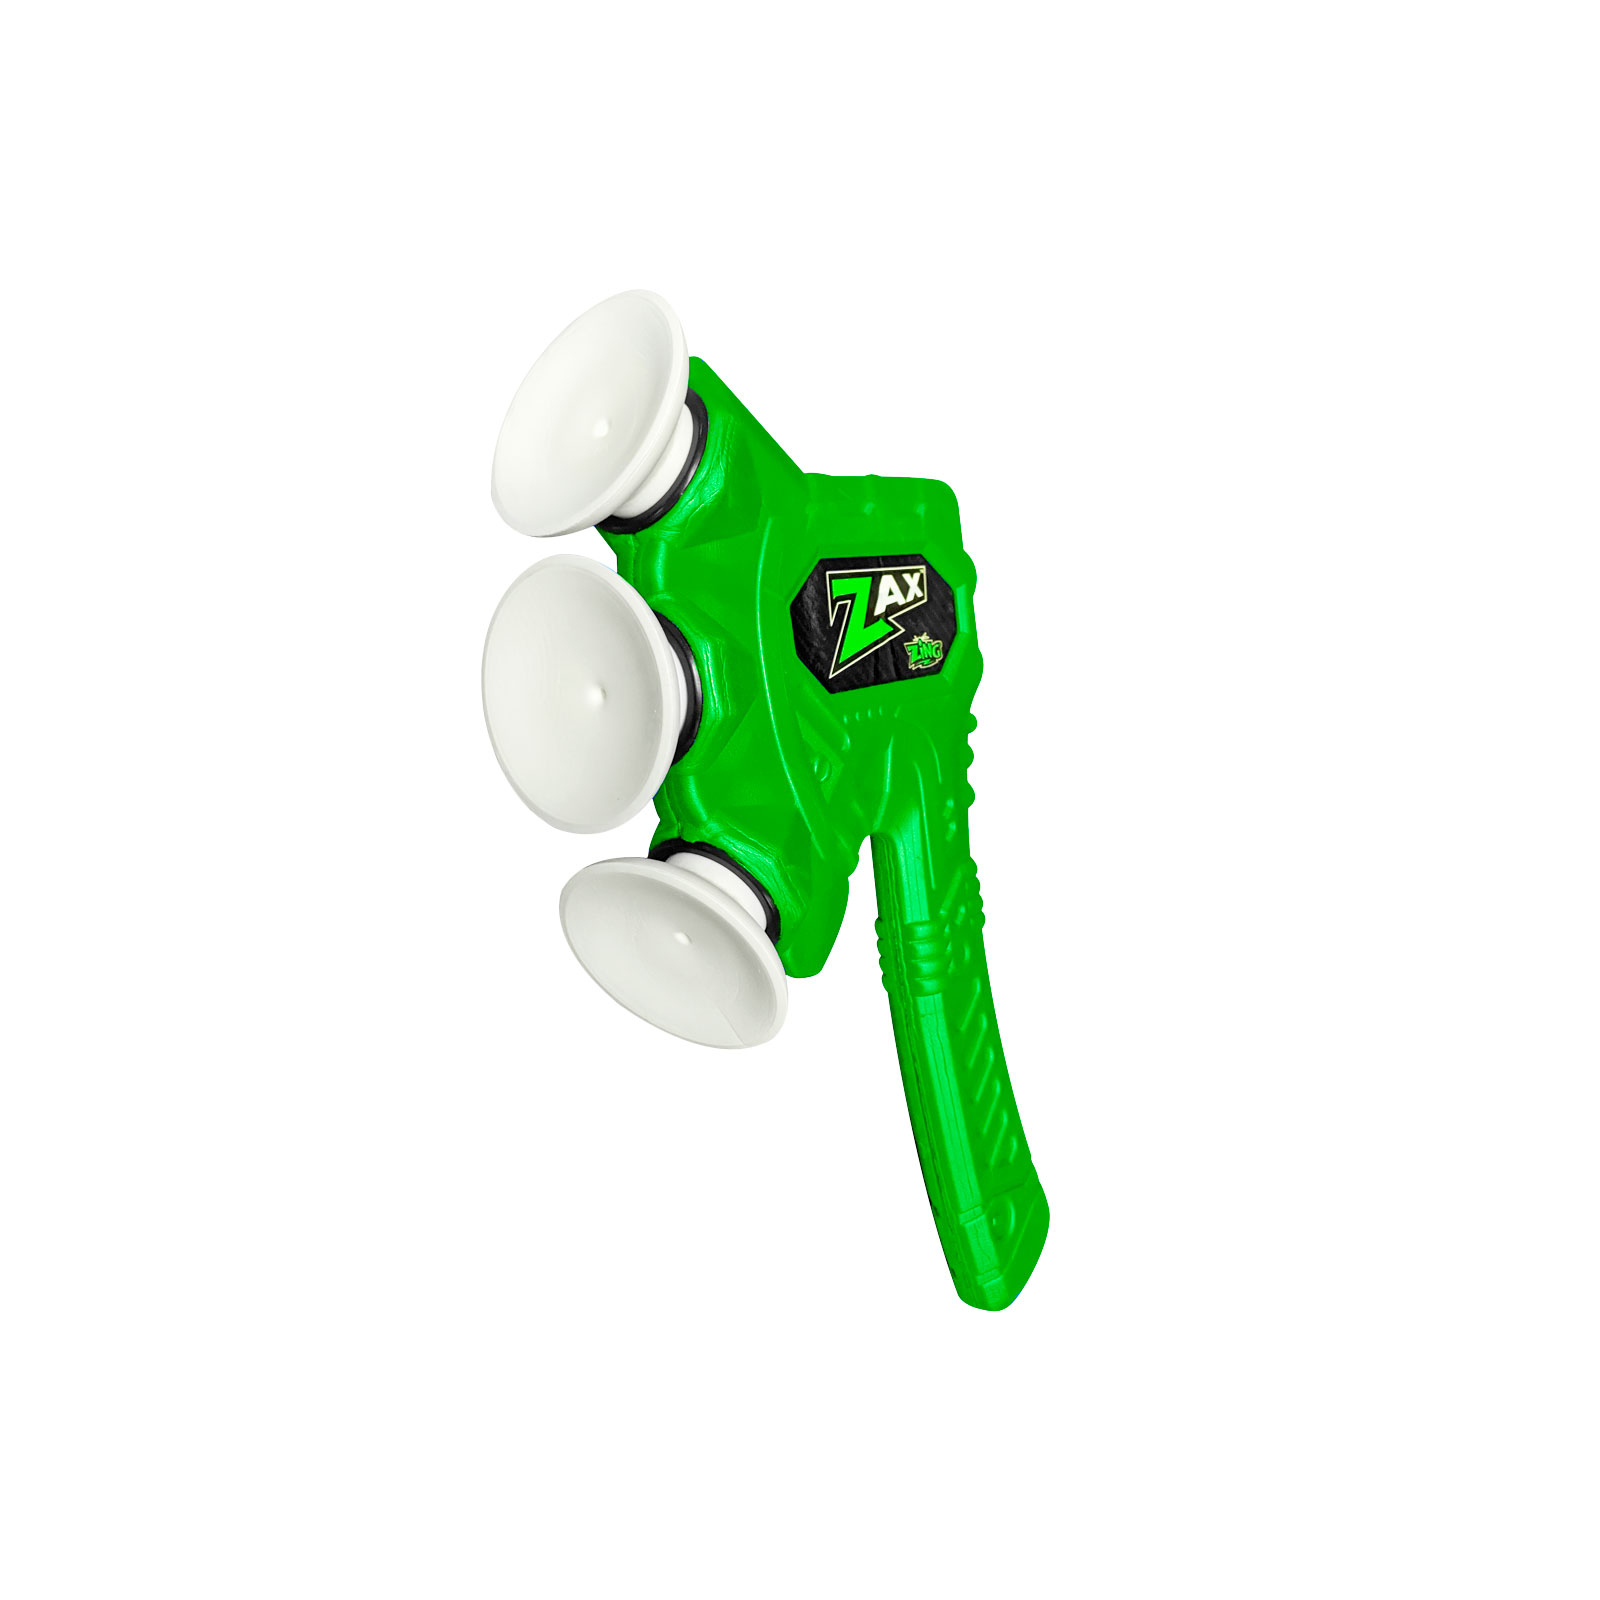 Игрушечное оружие Zing топор Air Storm - Zax зеленый (ZG508G) изображение 2